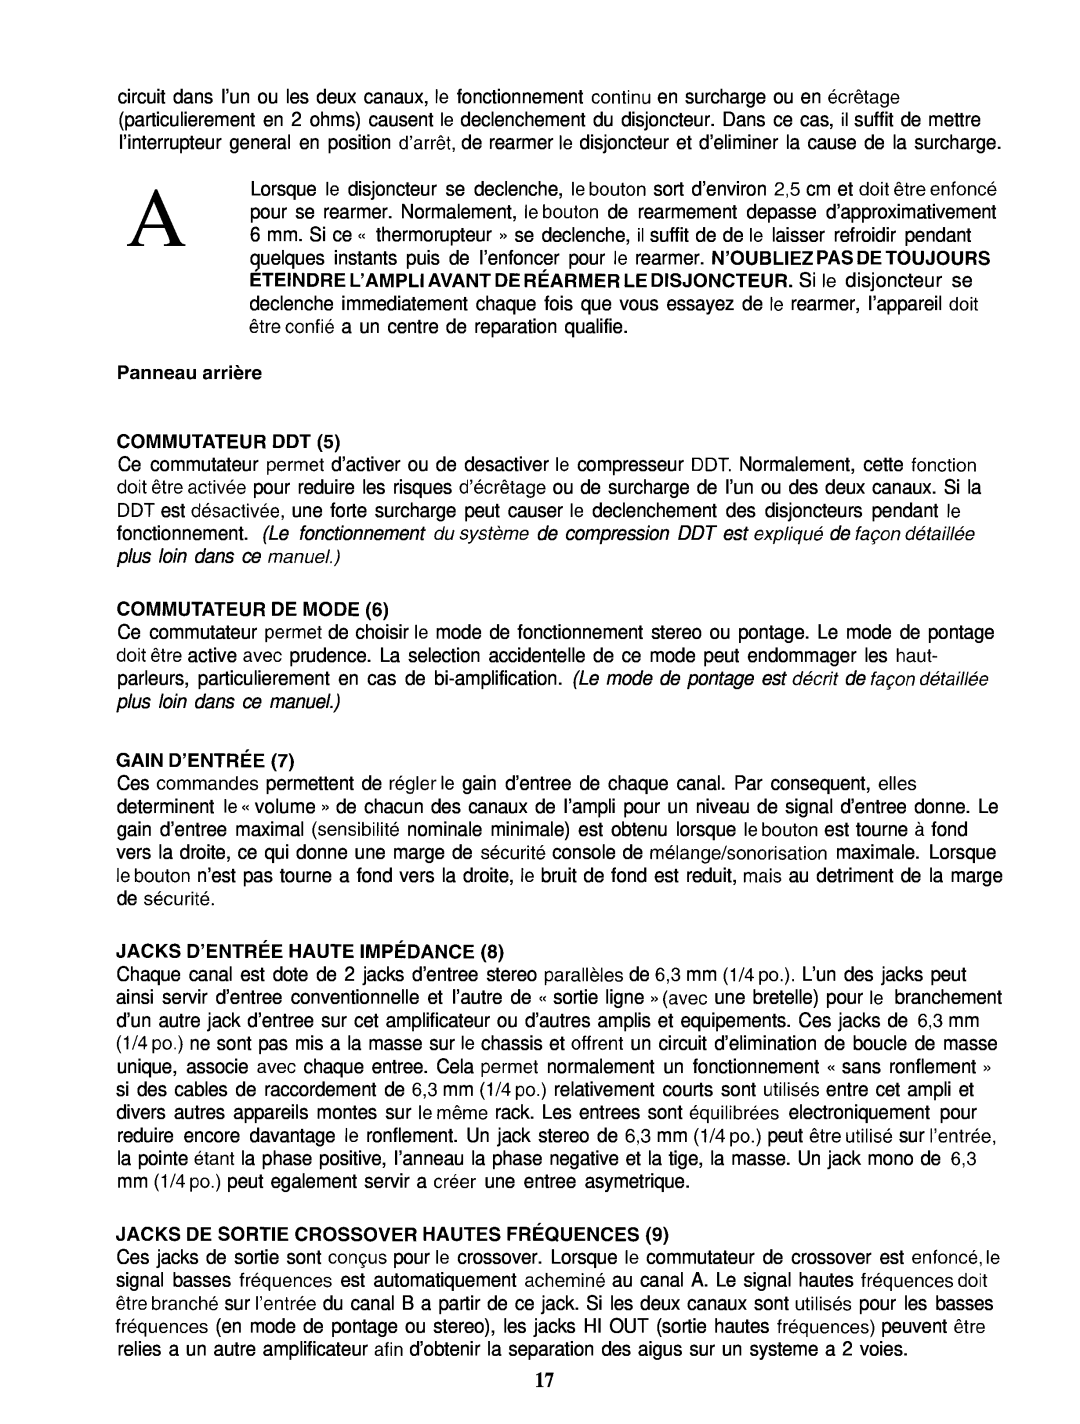 Peavey PV 2000 manual Panneau arrikre COMMUTATEUR DDT, Commutateur De Mode, Gain D’Entree, Jacks D’Entree Haute Impcdance 